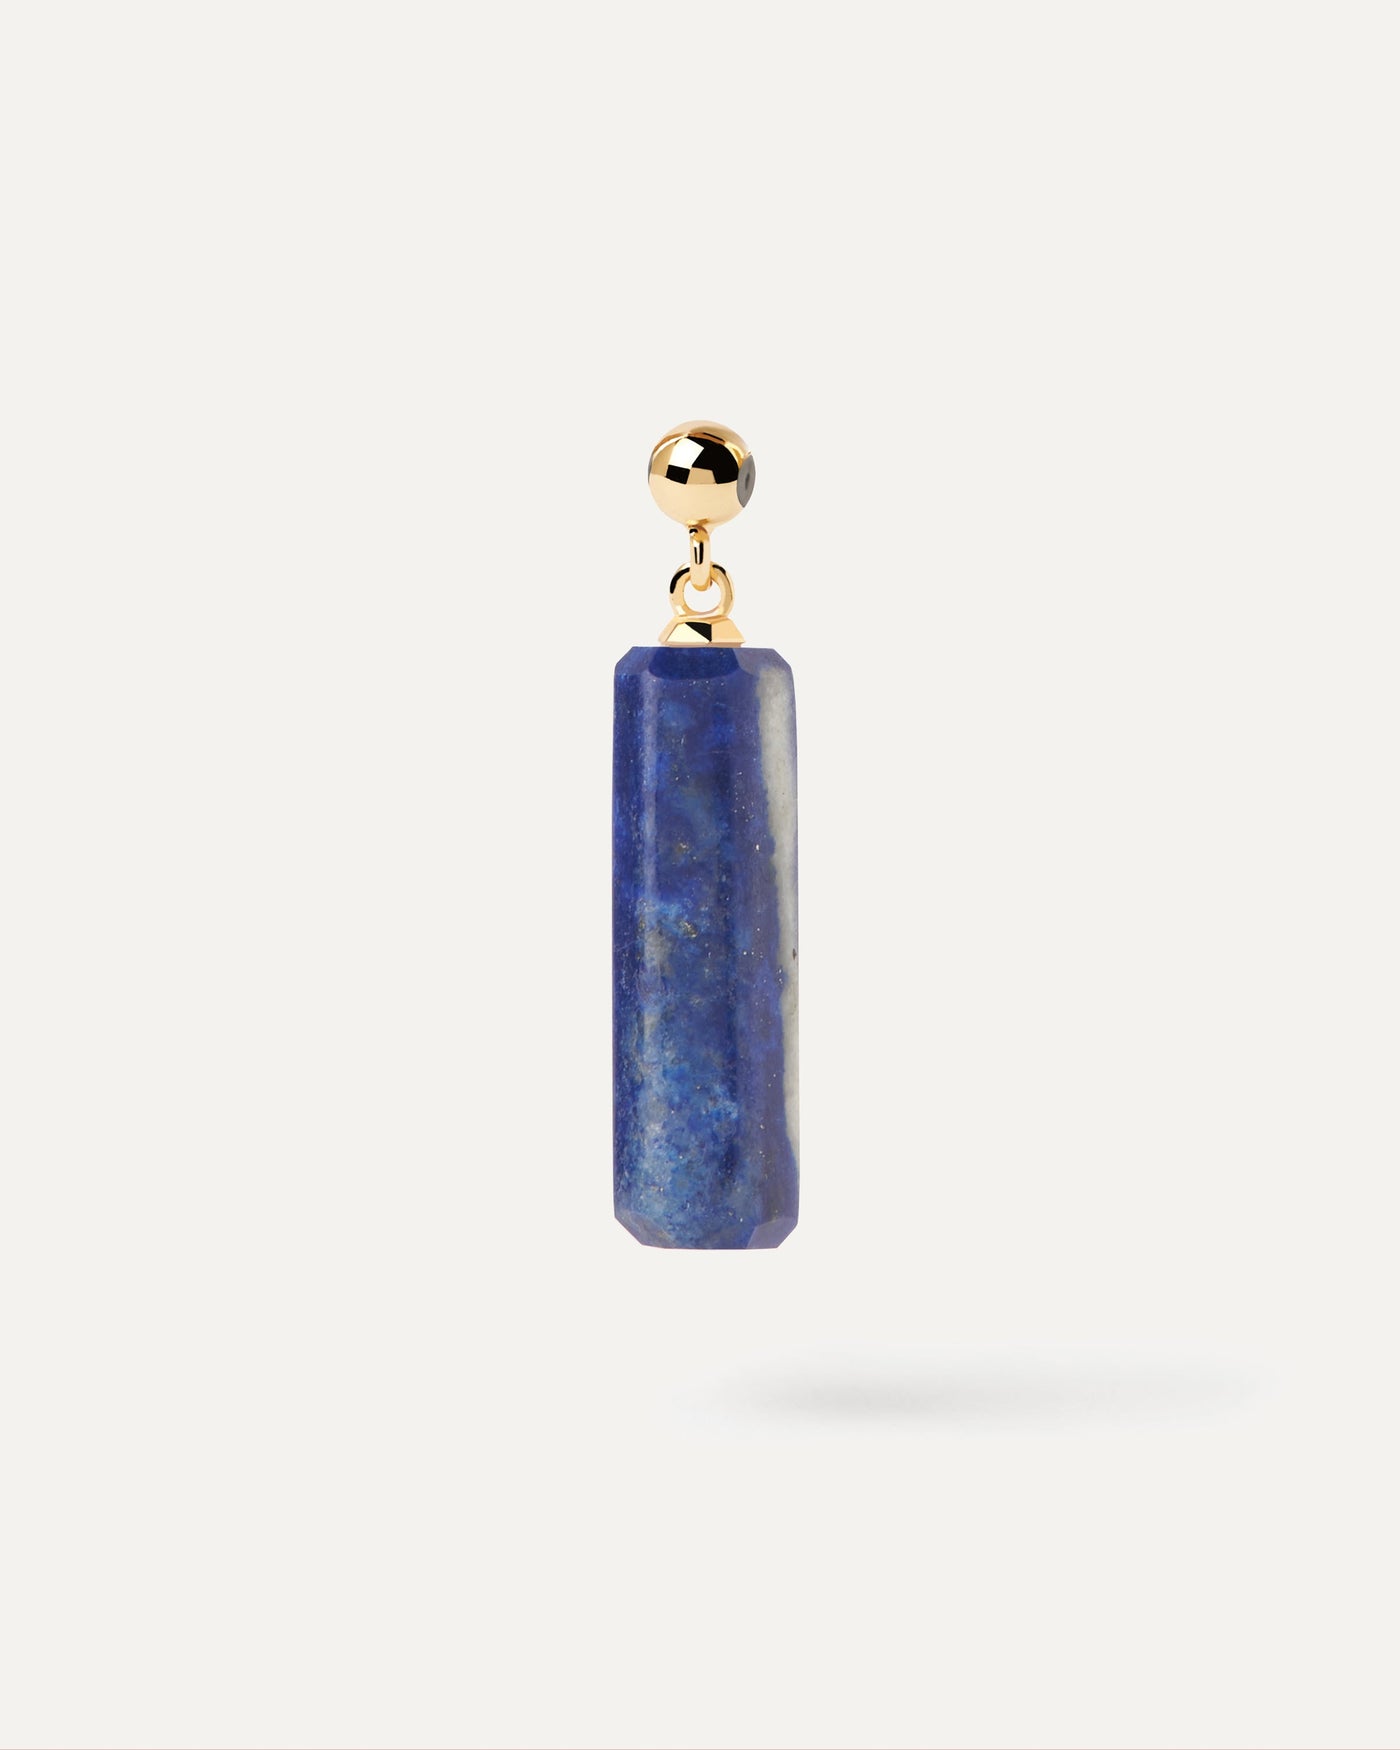 Charm Lapis Lazuli. Charm de pierre bleu foncé de forme allongée pour collier ou bracelet. Découvrez les dernières nouveautés de chez PDPAOLA. Commandez et recevez votre bijou en toute sérénité.